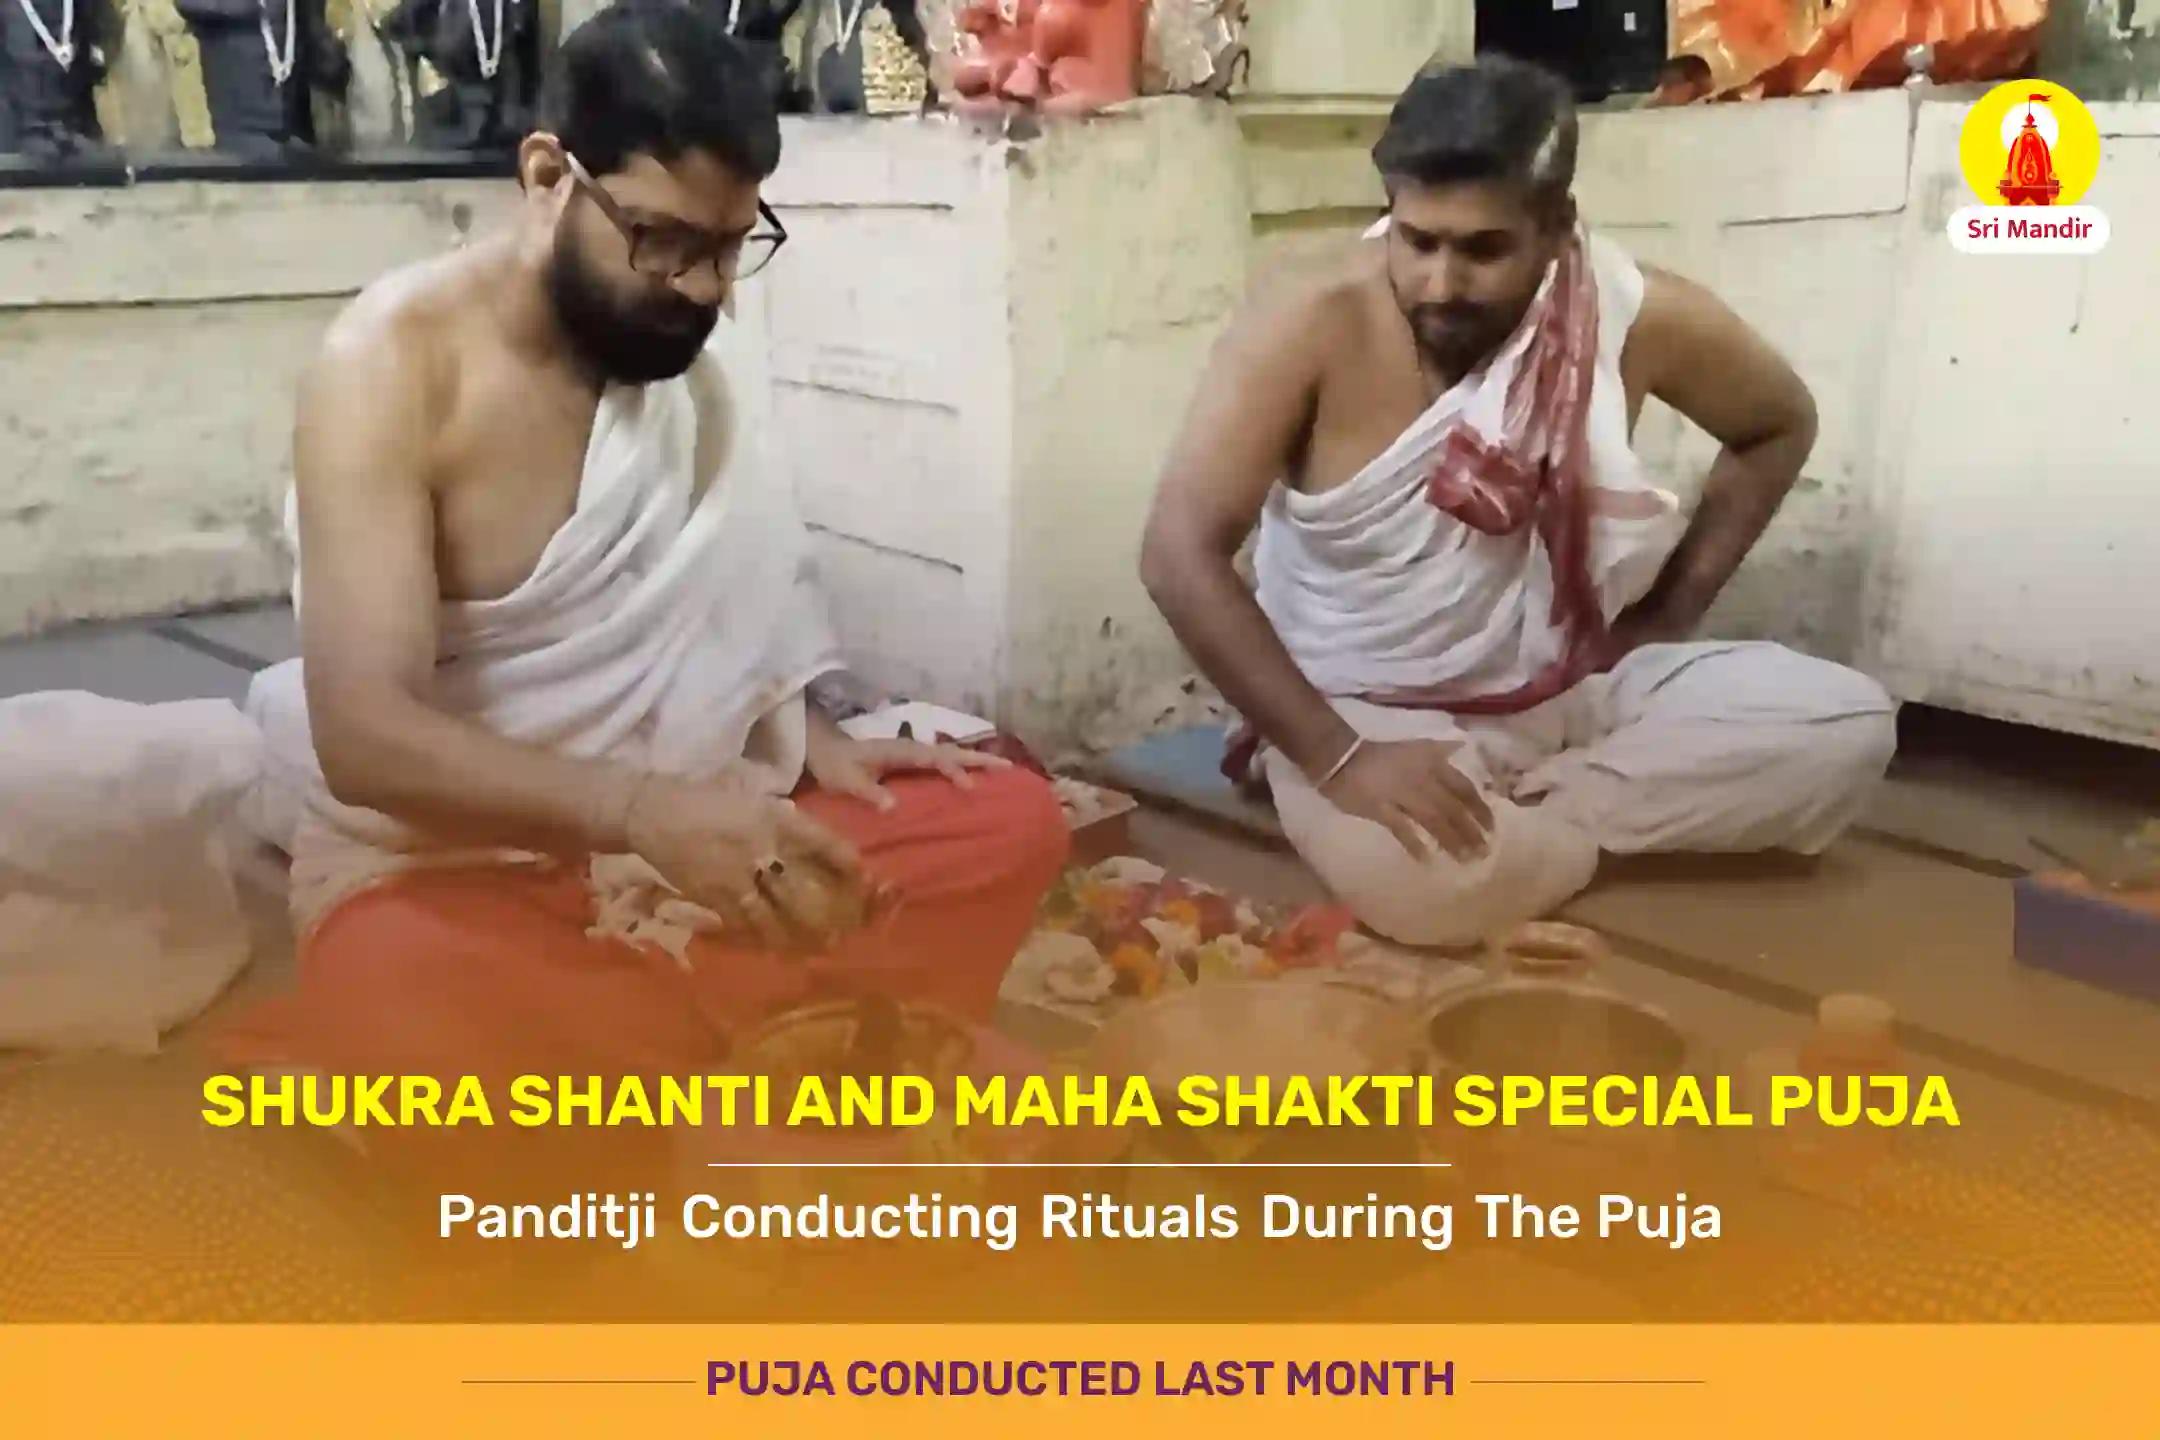 Shukra Shanti Maha Puja and Maha Shakti Maha Devi Puja for Happy and luxurious married life